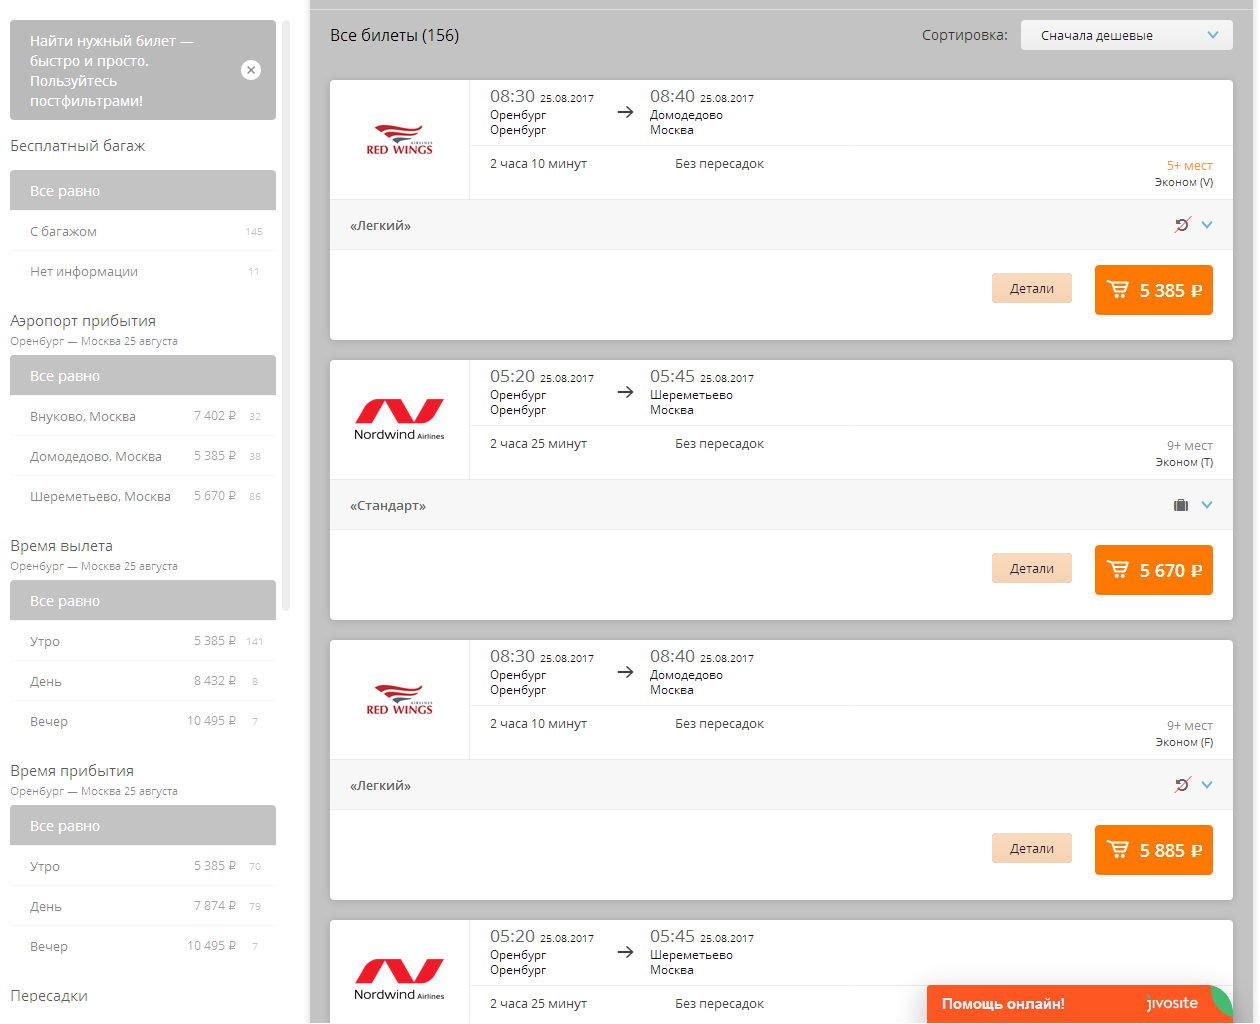 Шереметьево купить билеты онлайн на самолет онлайн душанбе екатеринбург авиабилеты прямой рейс цена расписание